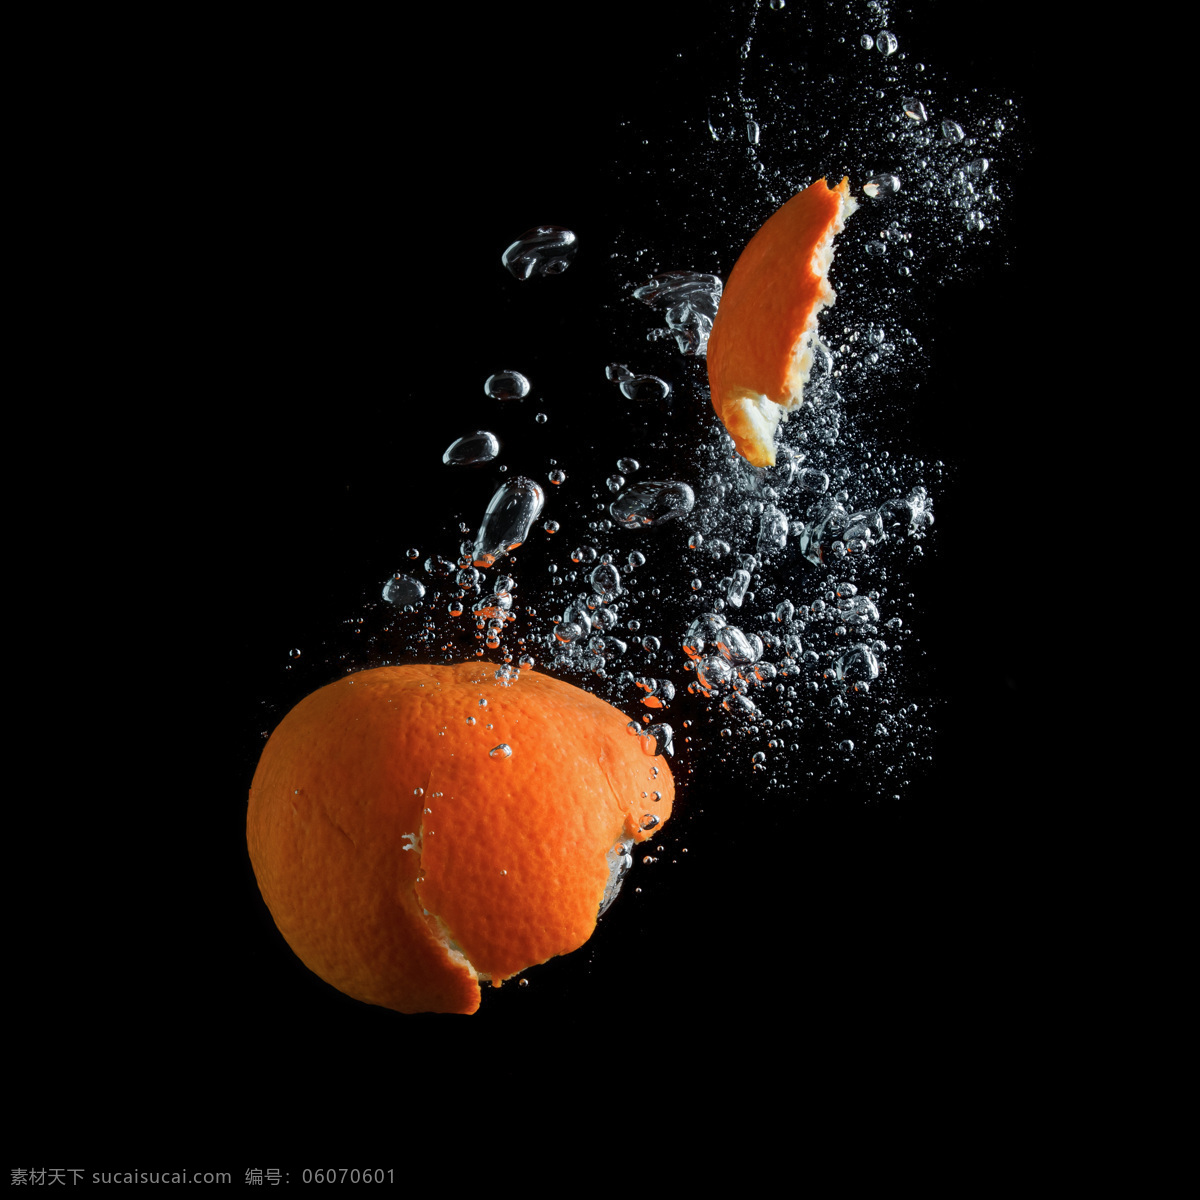 水中 破裂 橘子 水 水珠 水纹 水果 橘子皮 蔬菜图片 餐饮美食